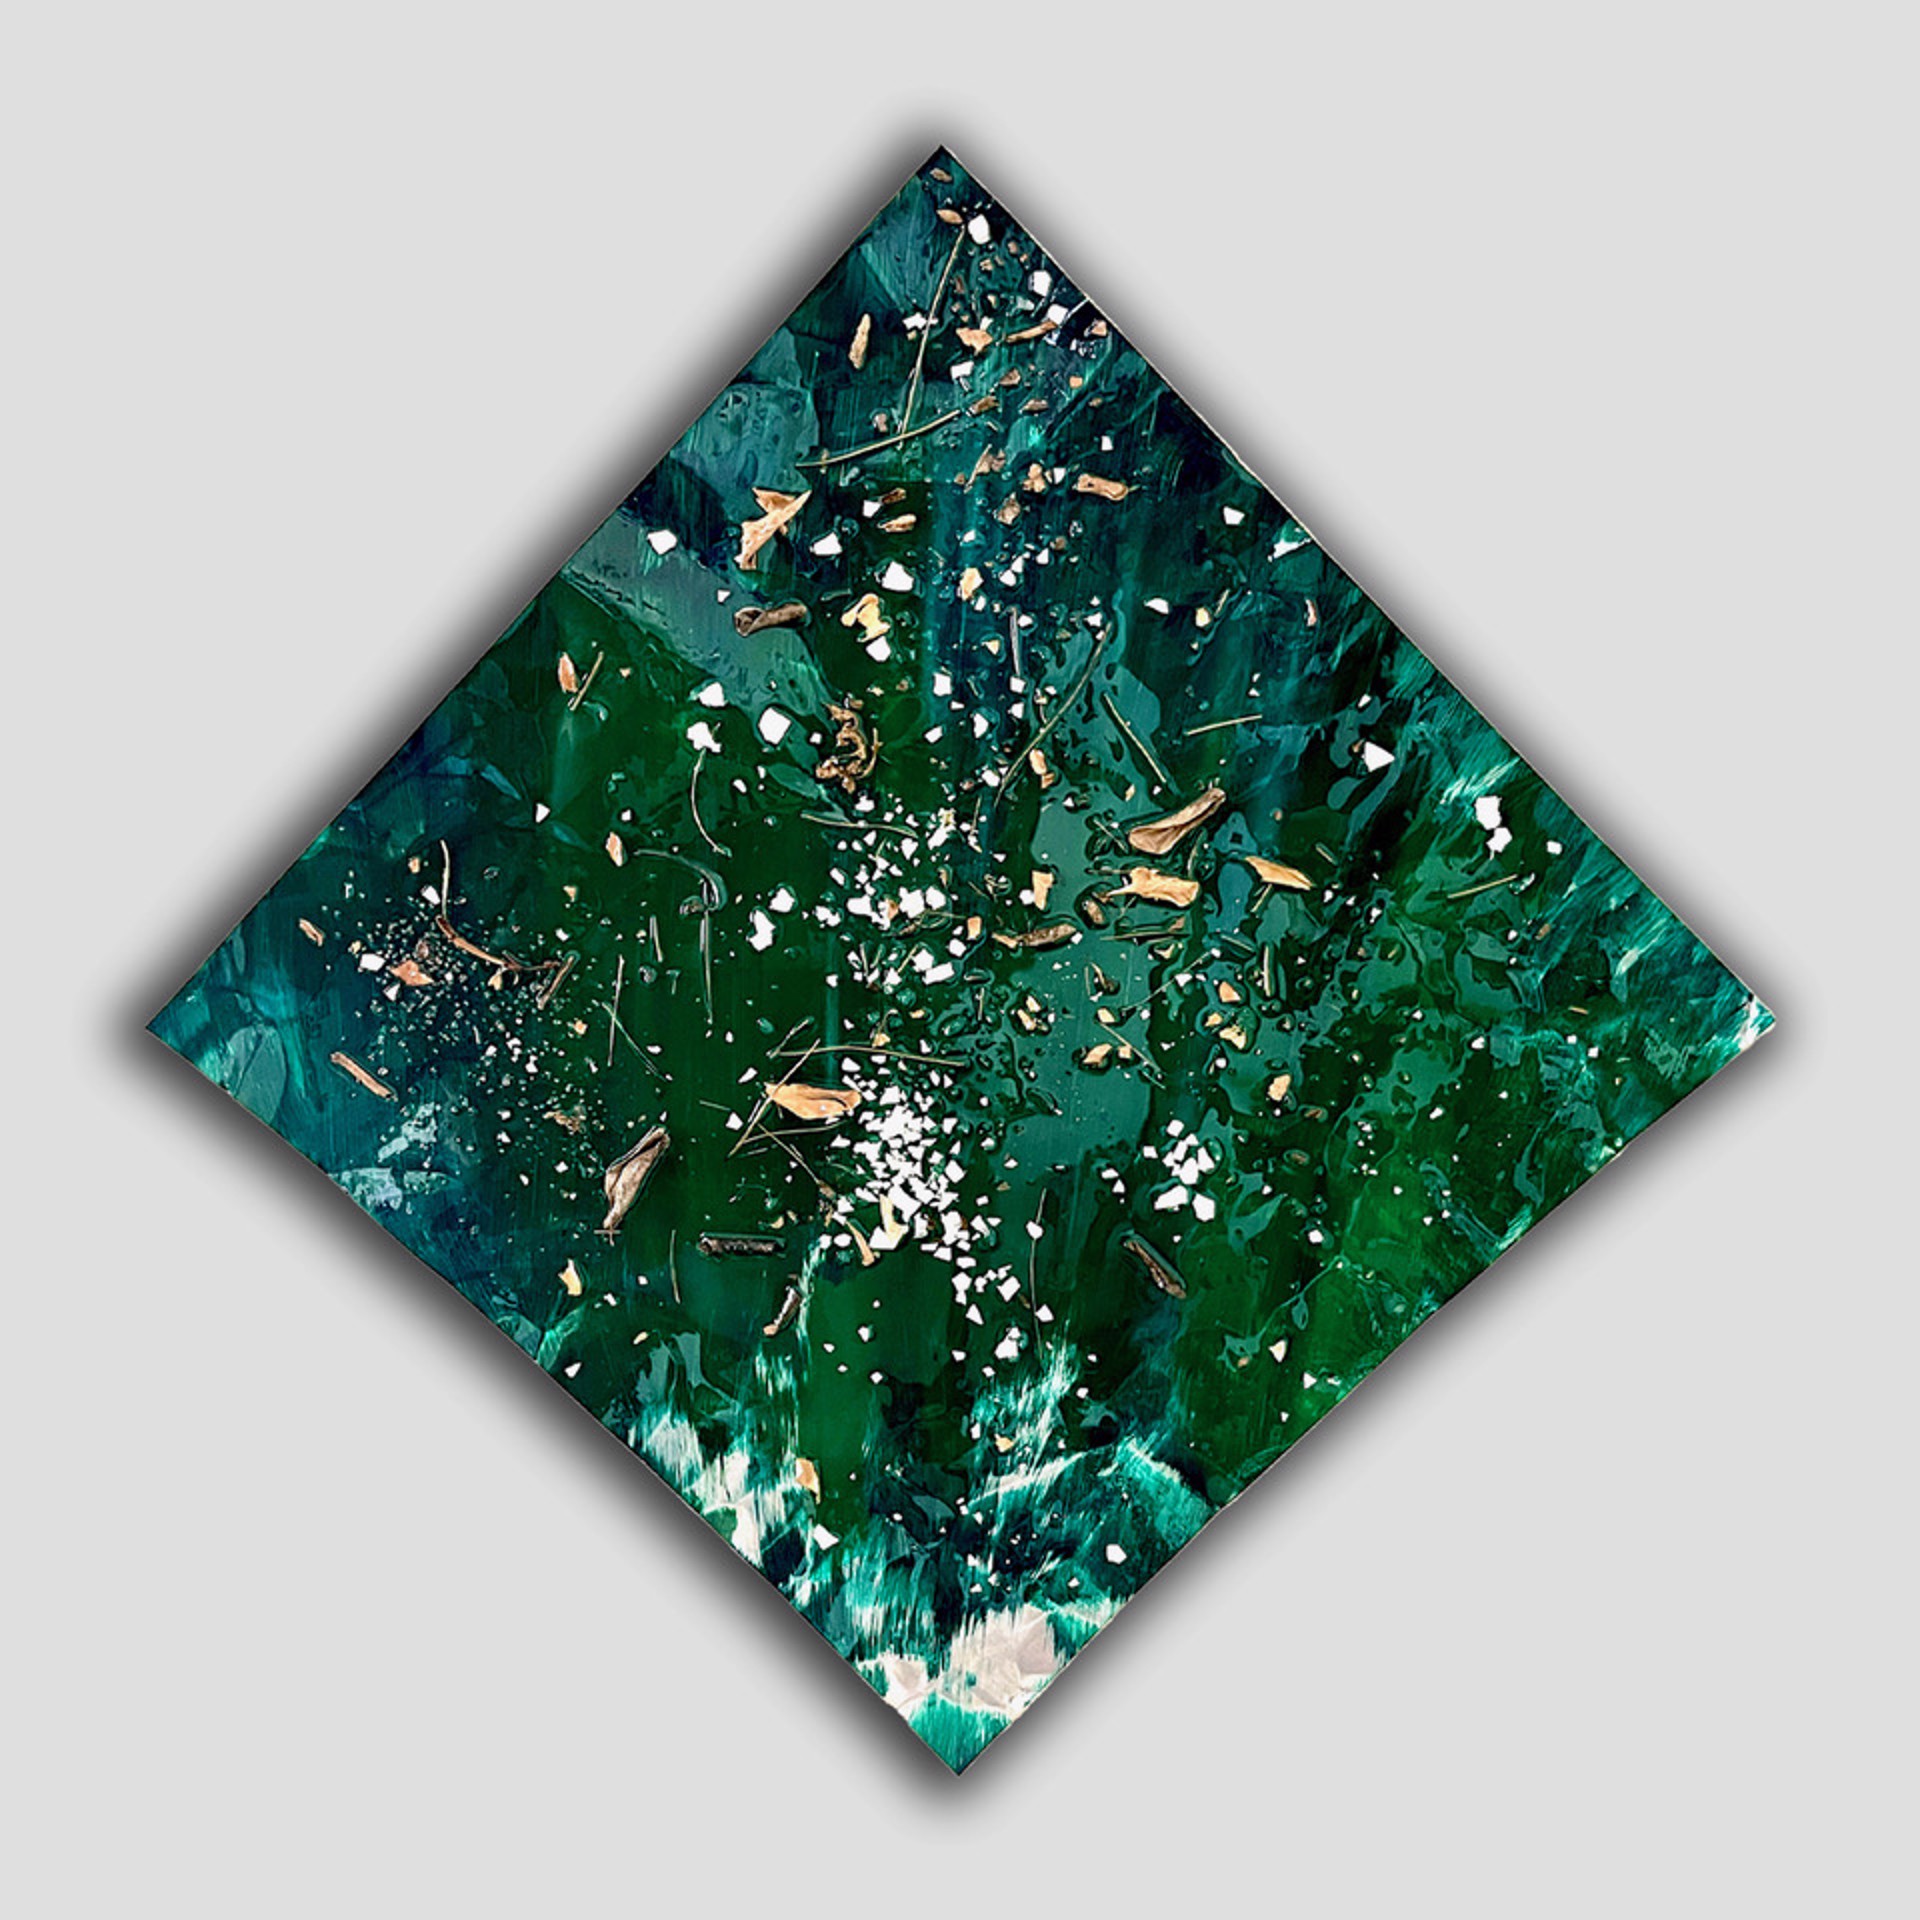 Green Diamond by Tony Alunni